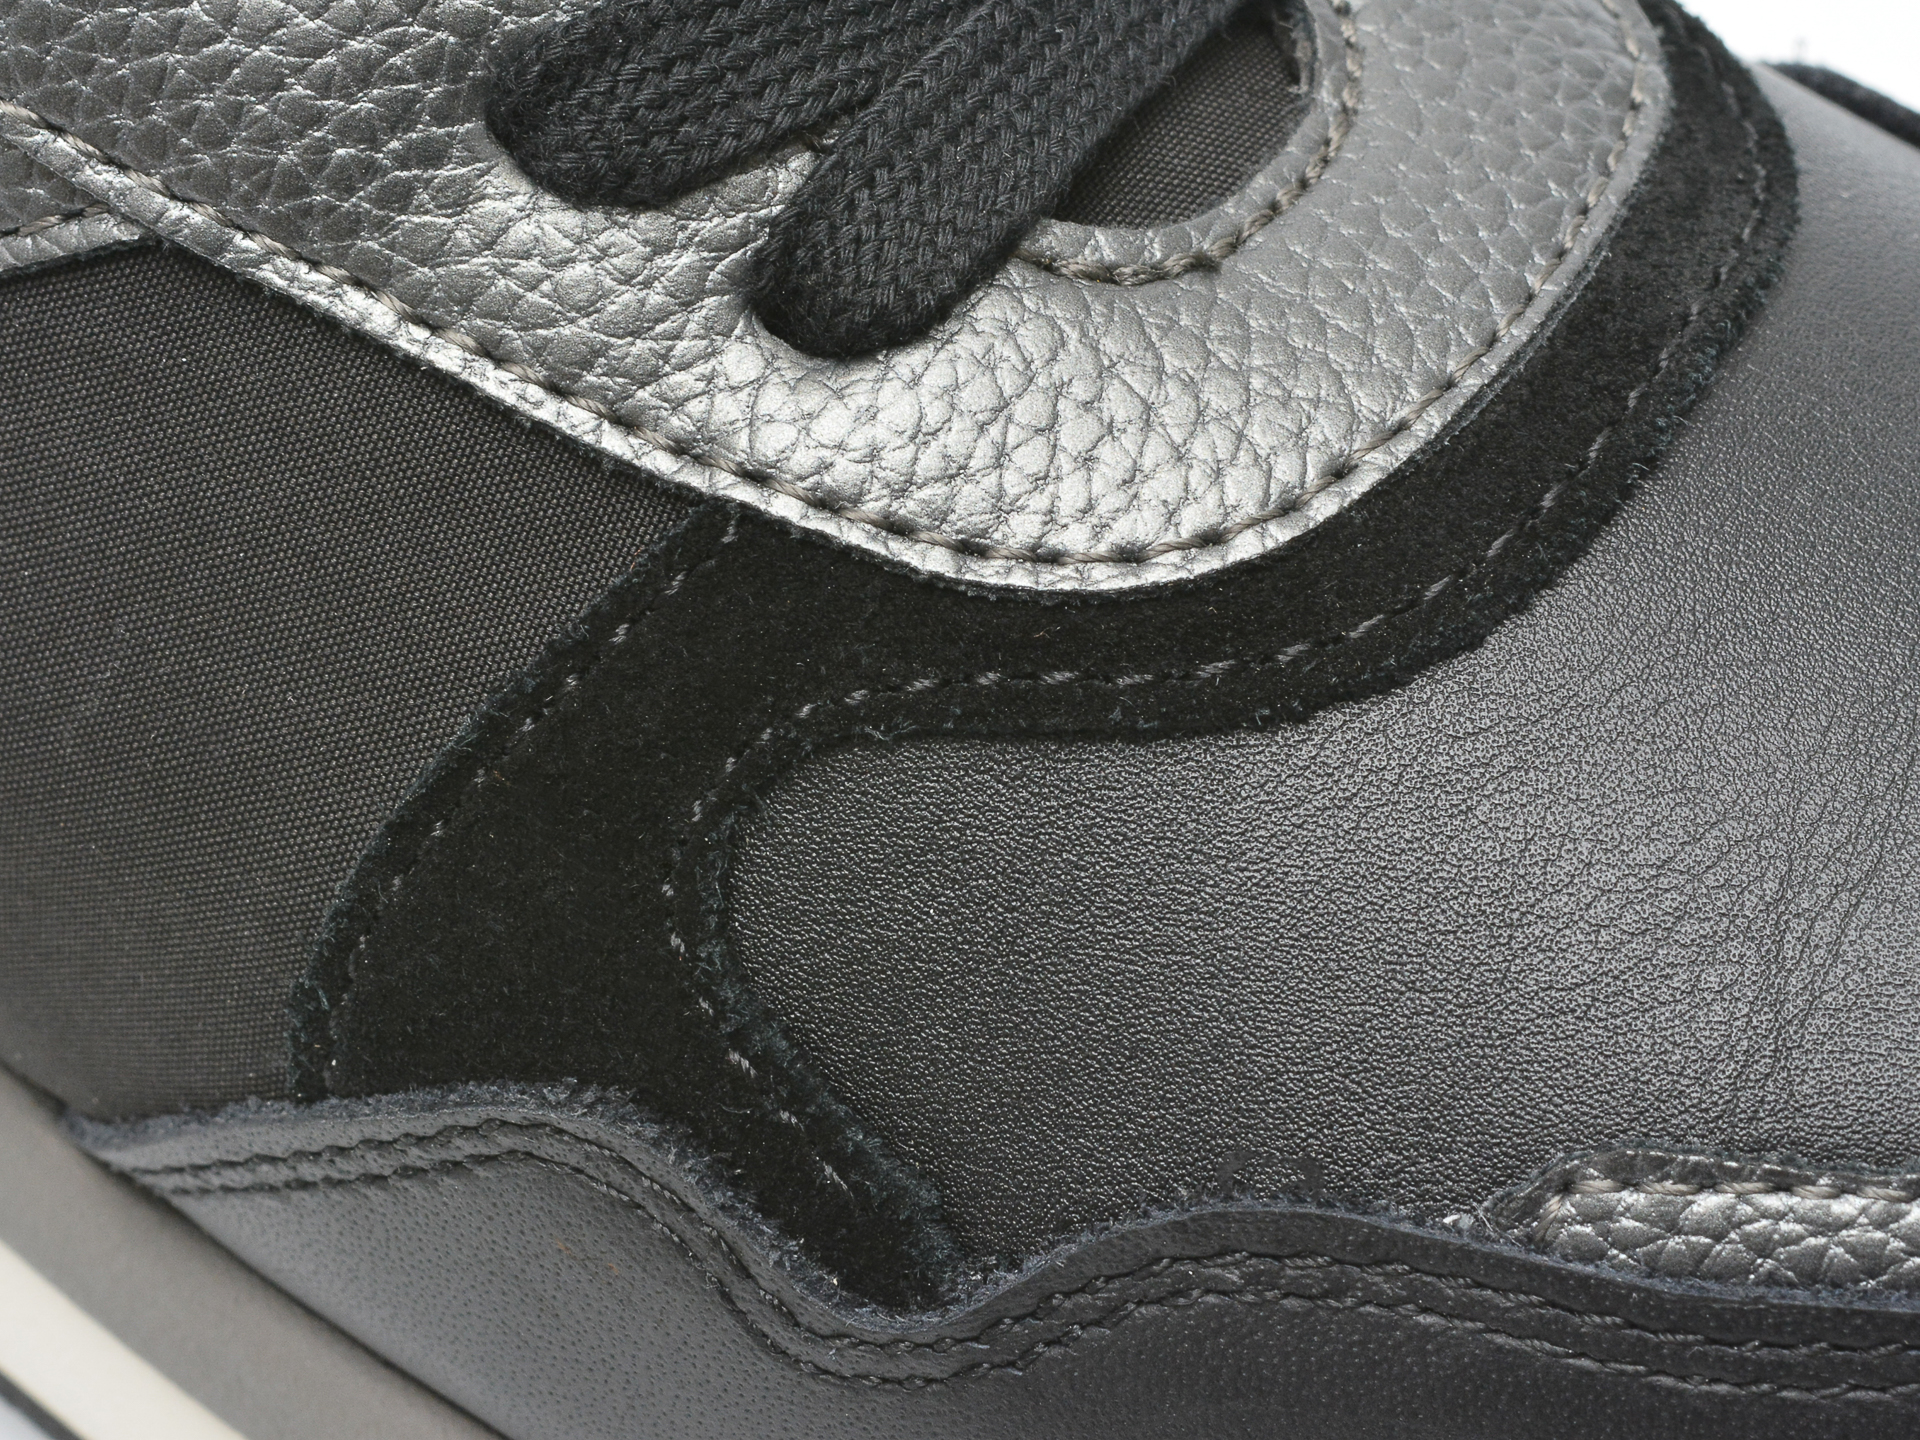 Poze Pantofi sport GEOX negri, D25RRB, din piele naturala tezyo.ro - by OTTER Distribution